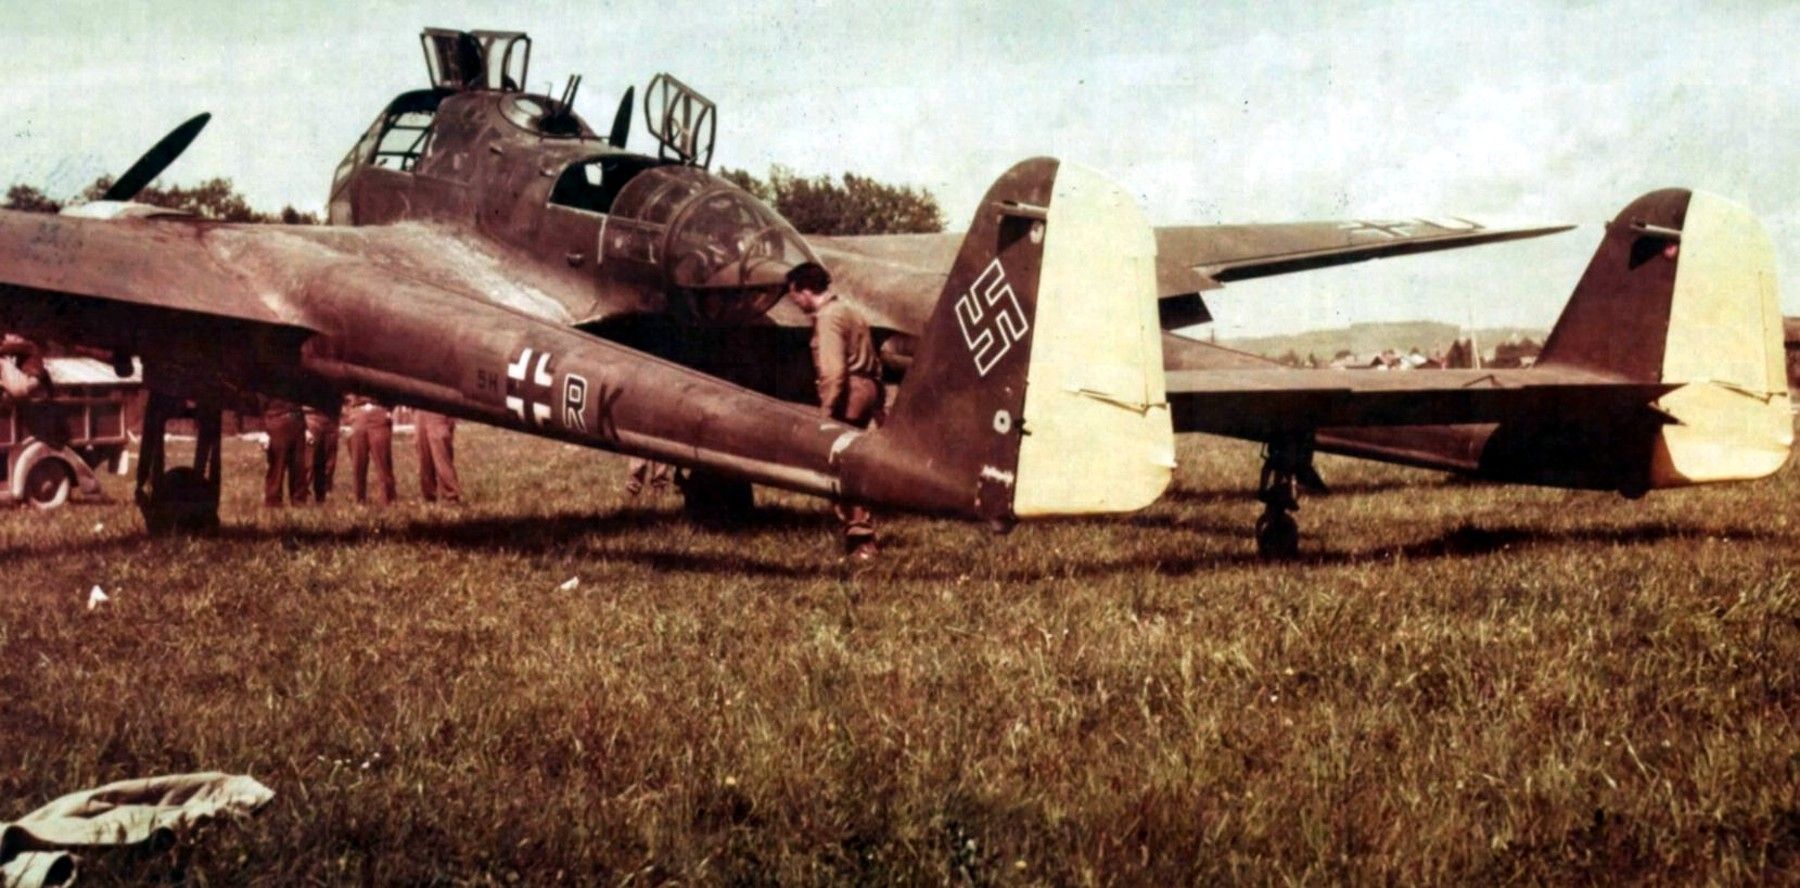 FW-189F